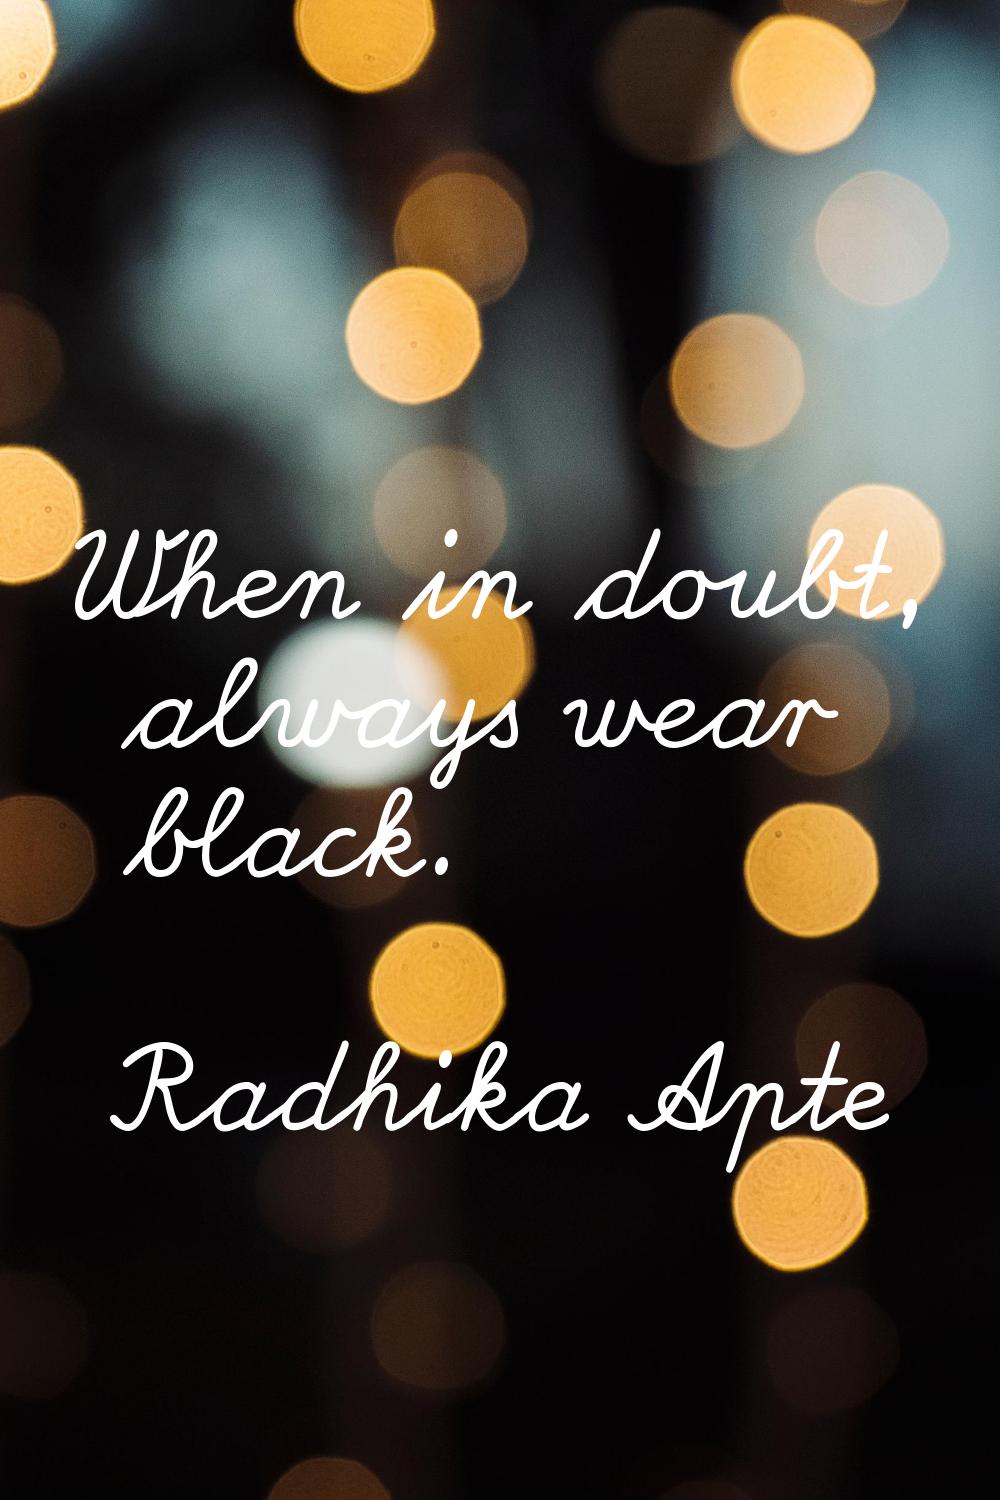 When in doubt, always wear black.